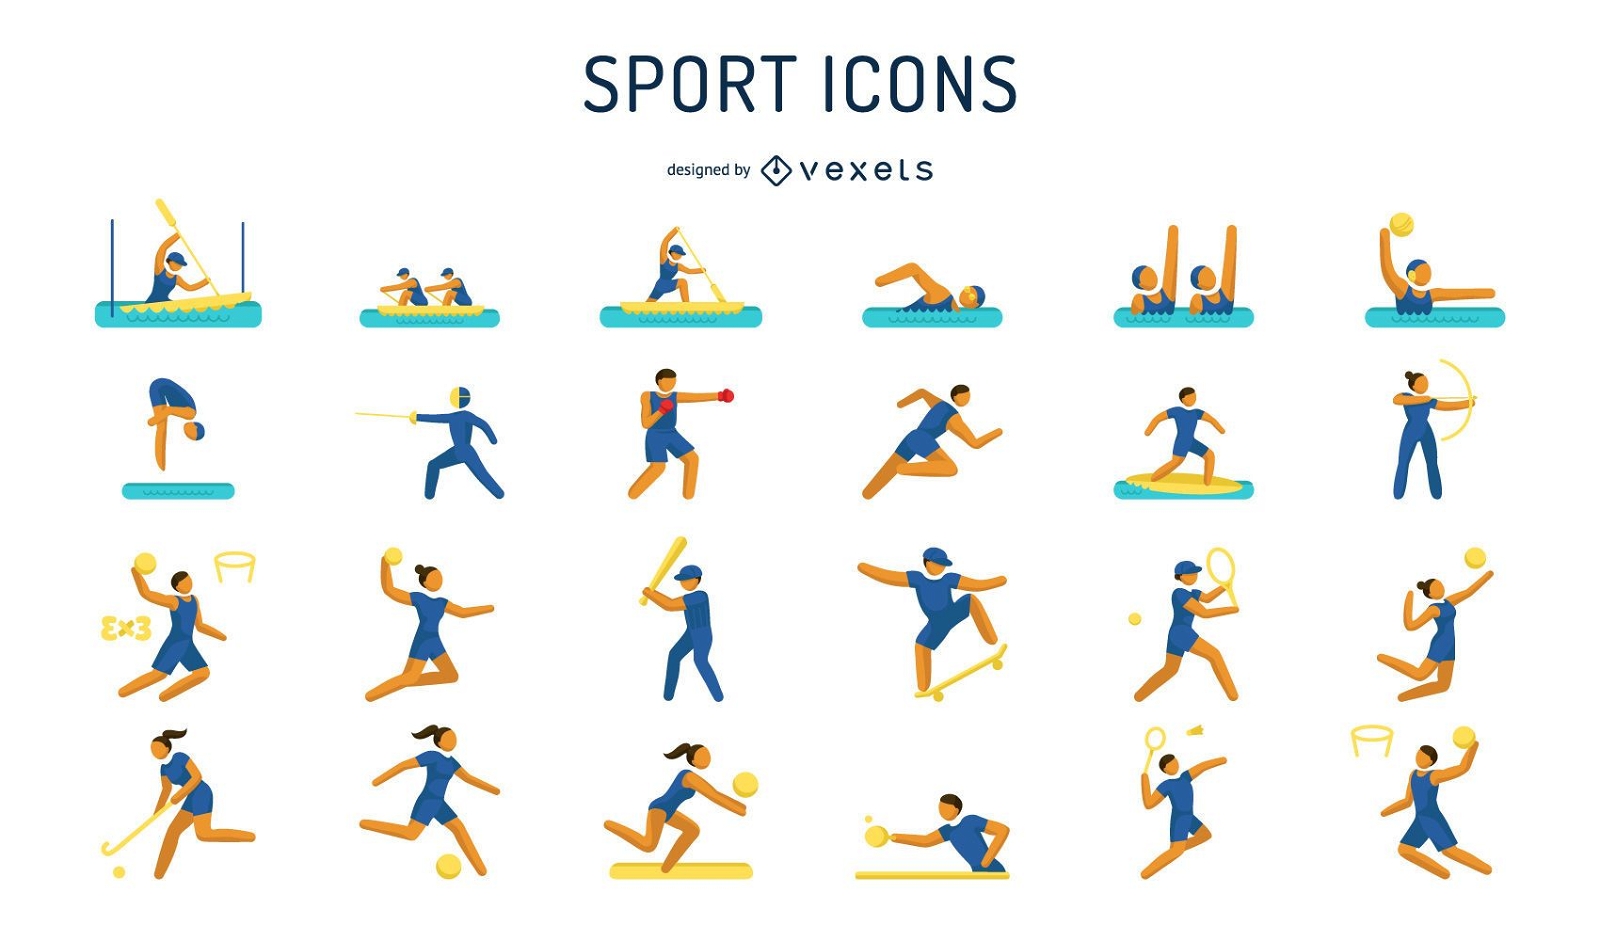 Paquete de iconos de pictogramas de juegos deportivos